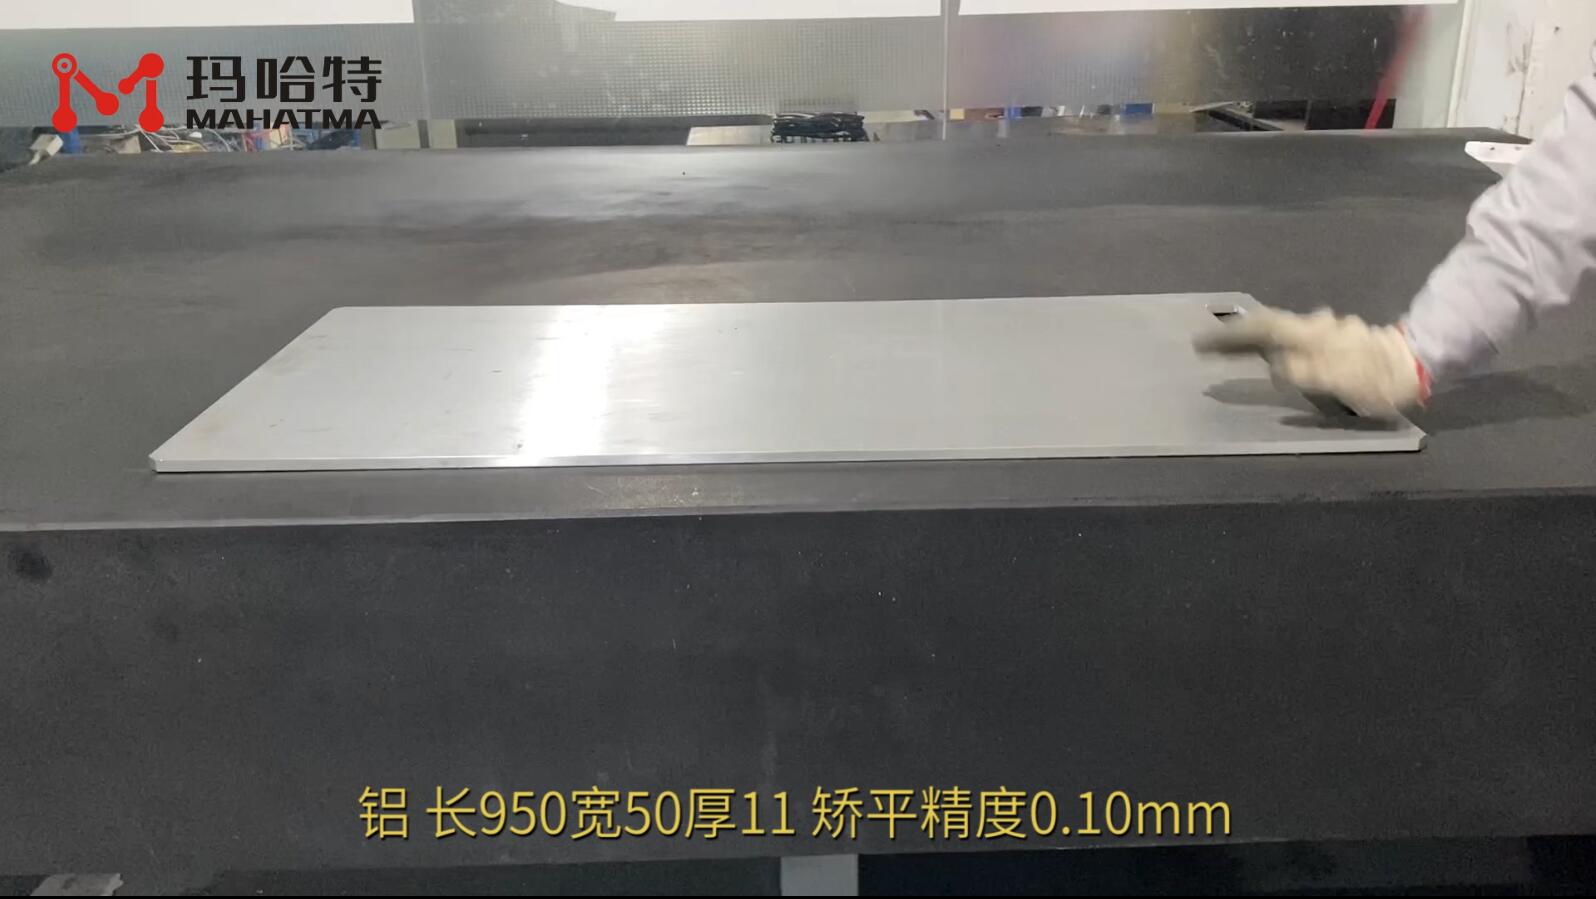 铝 MHT120-1300 长方形 长950宽50厚11 矫平精度0.10mm